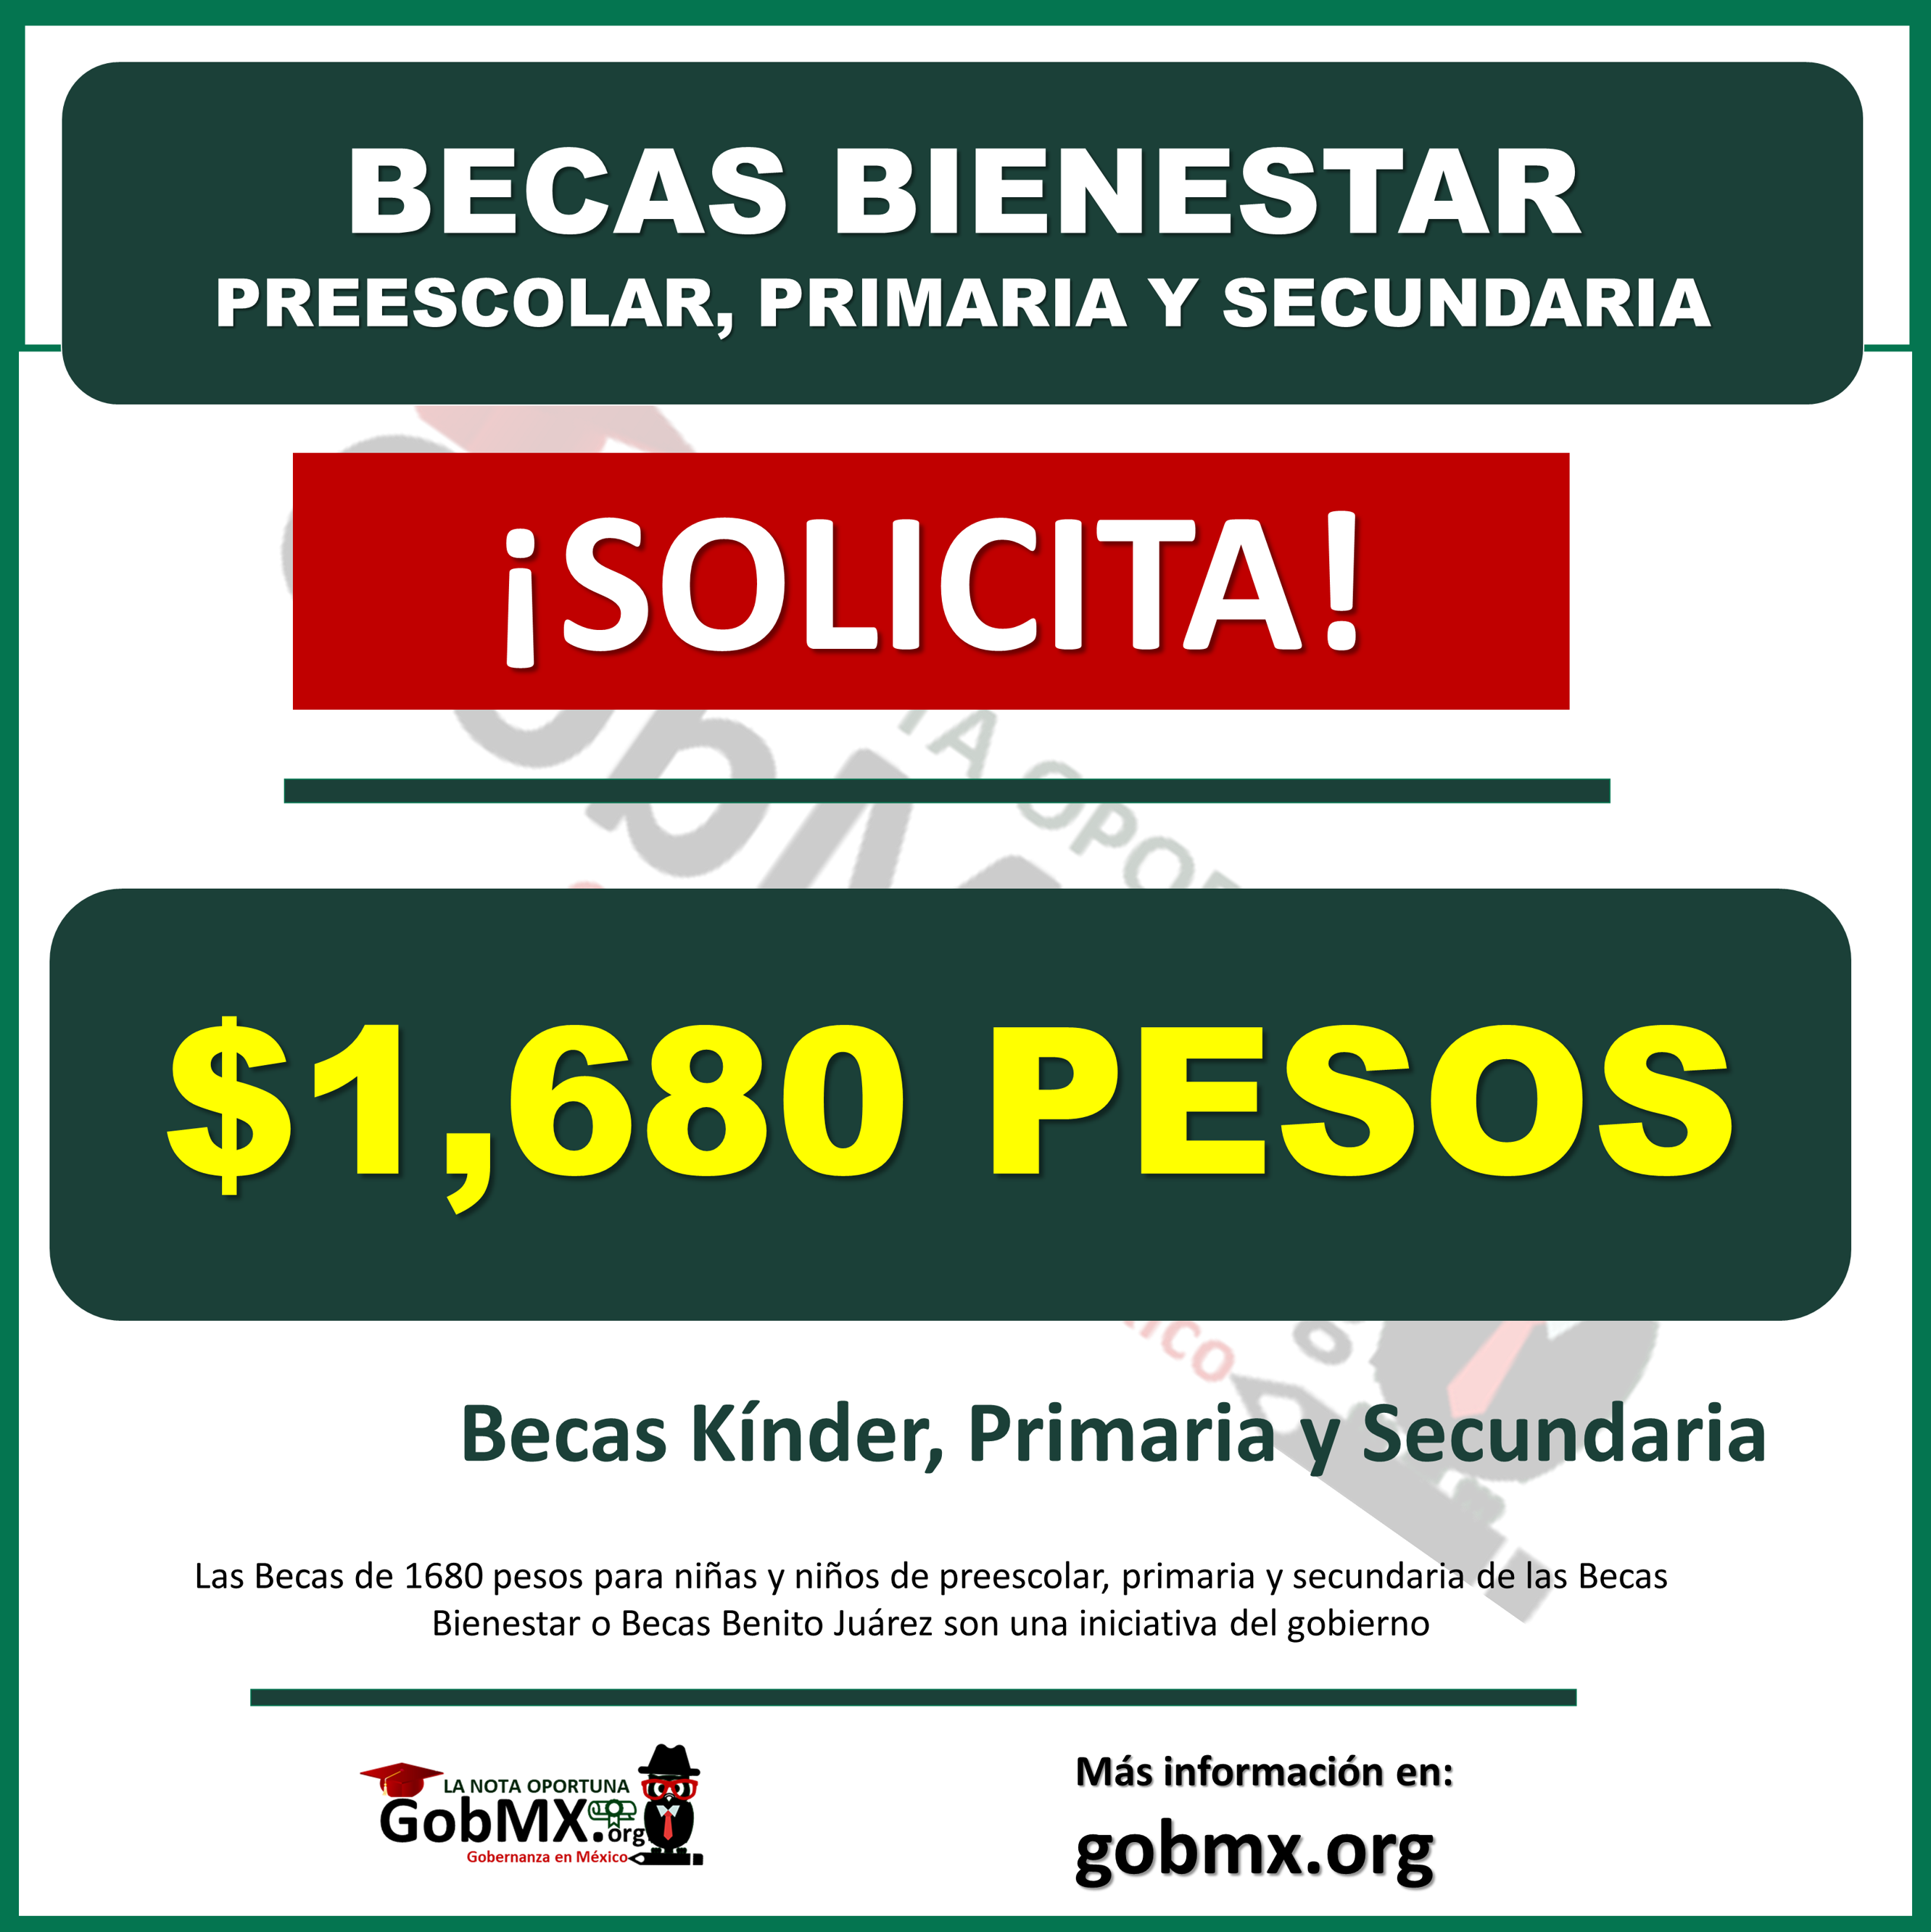 Â¡SOLICITA! Apoyo de 1680 pesos de las Becas Bienestar 2022 para las Familias de educaciÃ³n BÃ¡sica Â¡Kinder, Primaria y Secundaria!